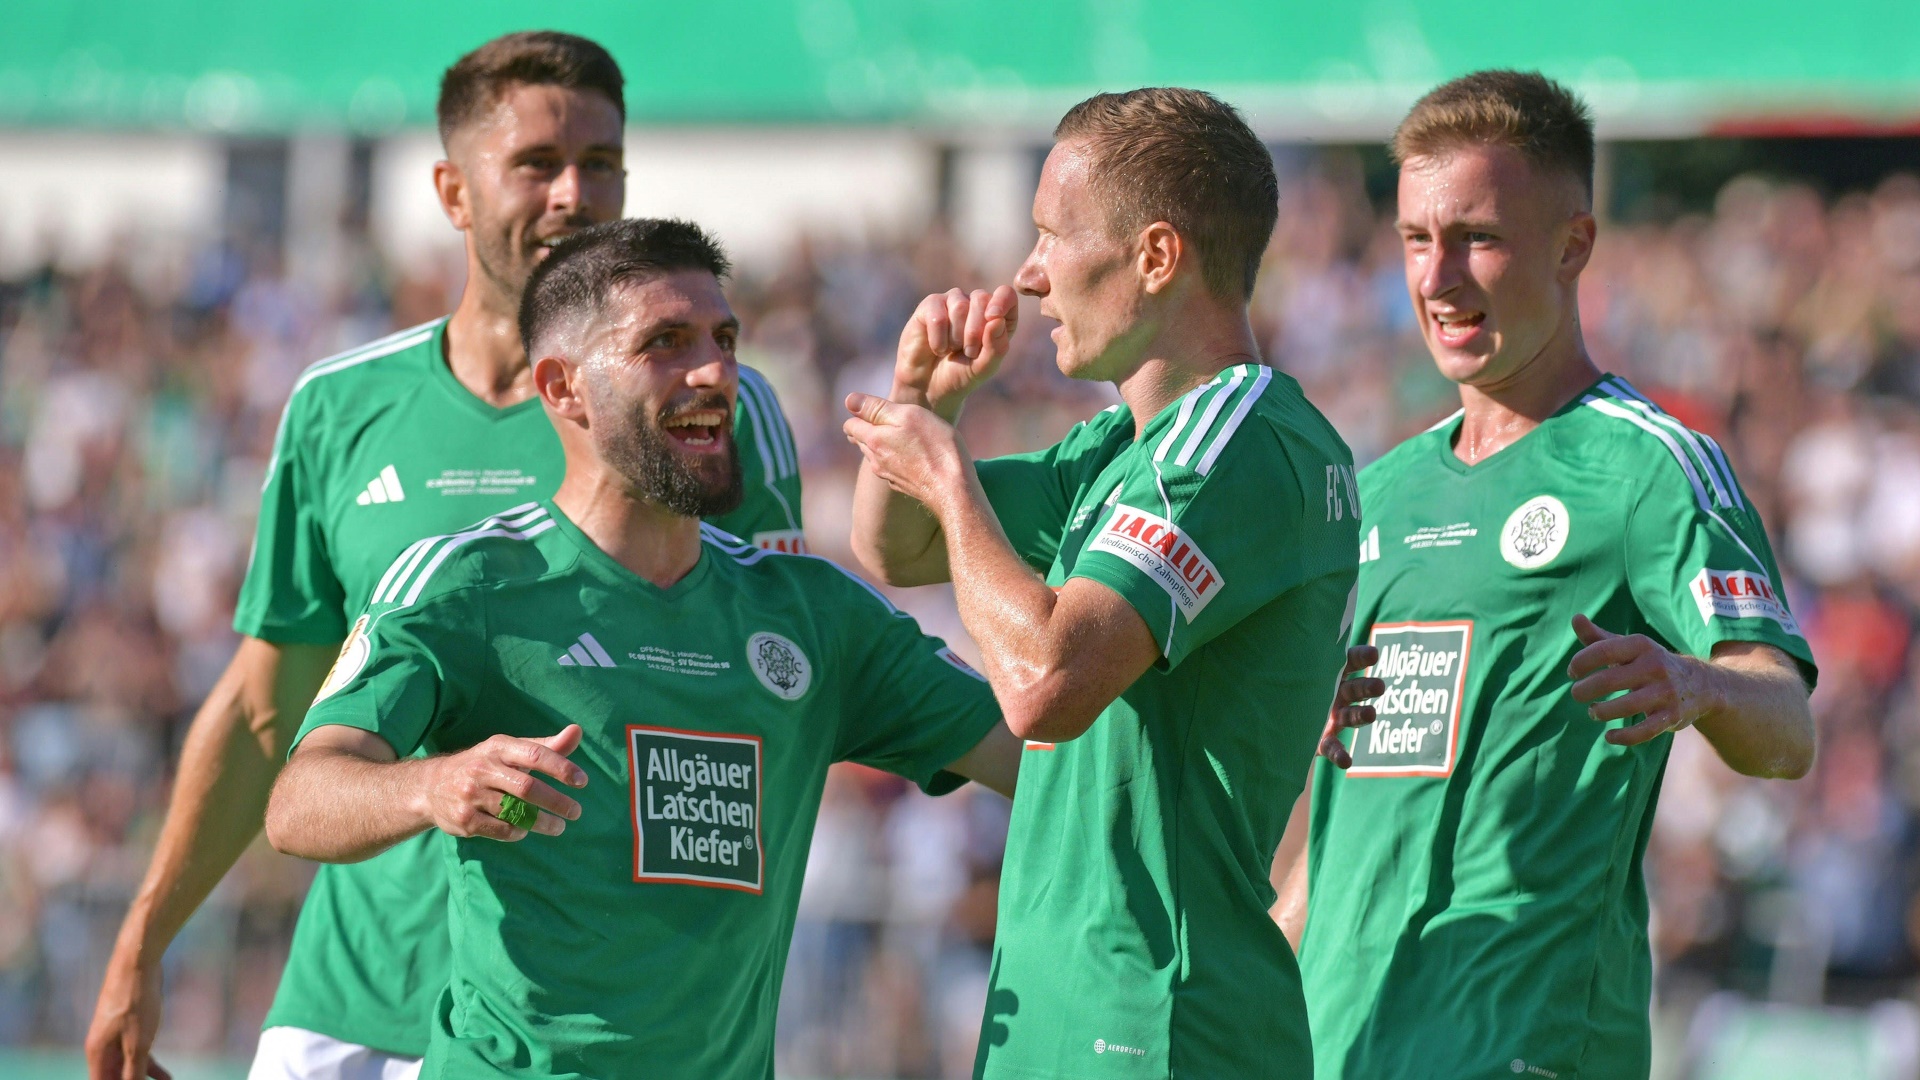 Viertligist Homburg wirft Darmstadt aus dem DFB-Pokal